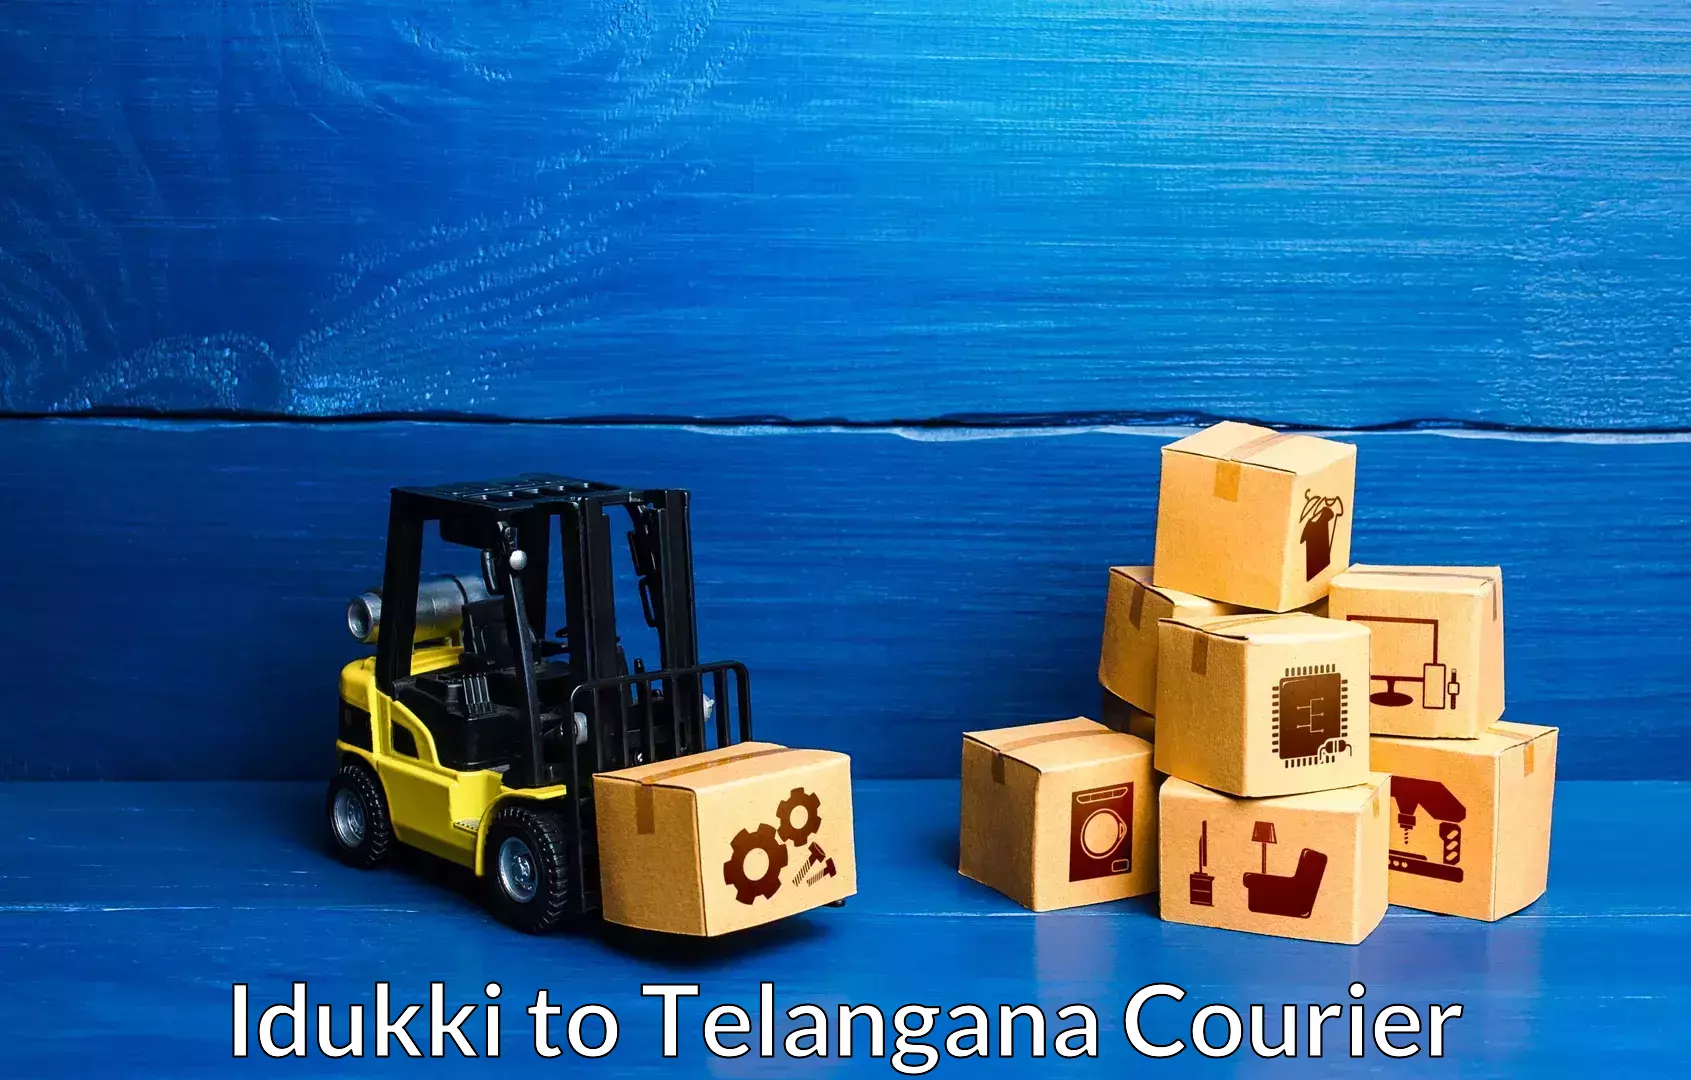 Skilled furniture transporters Idukki to Telangana